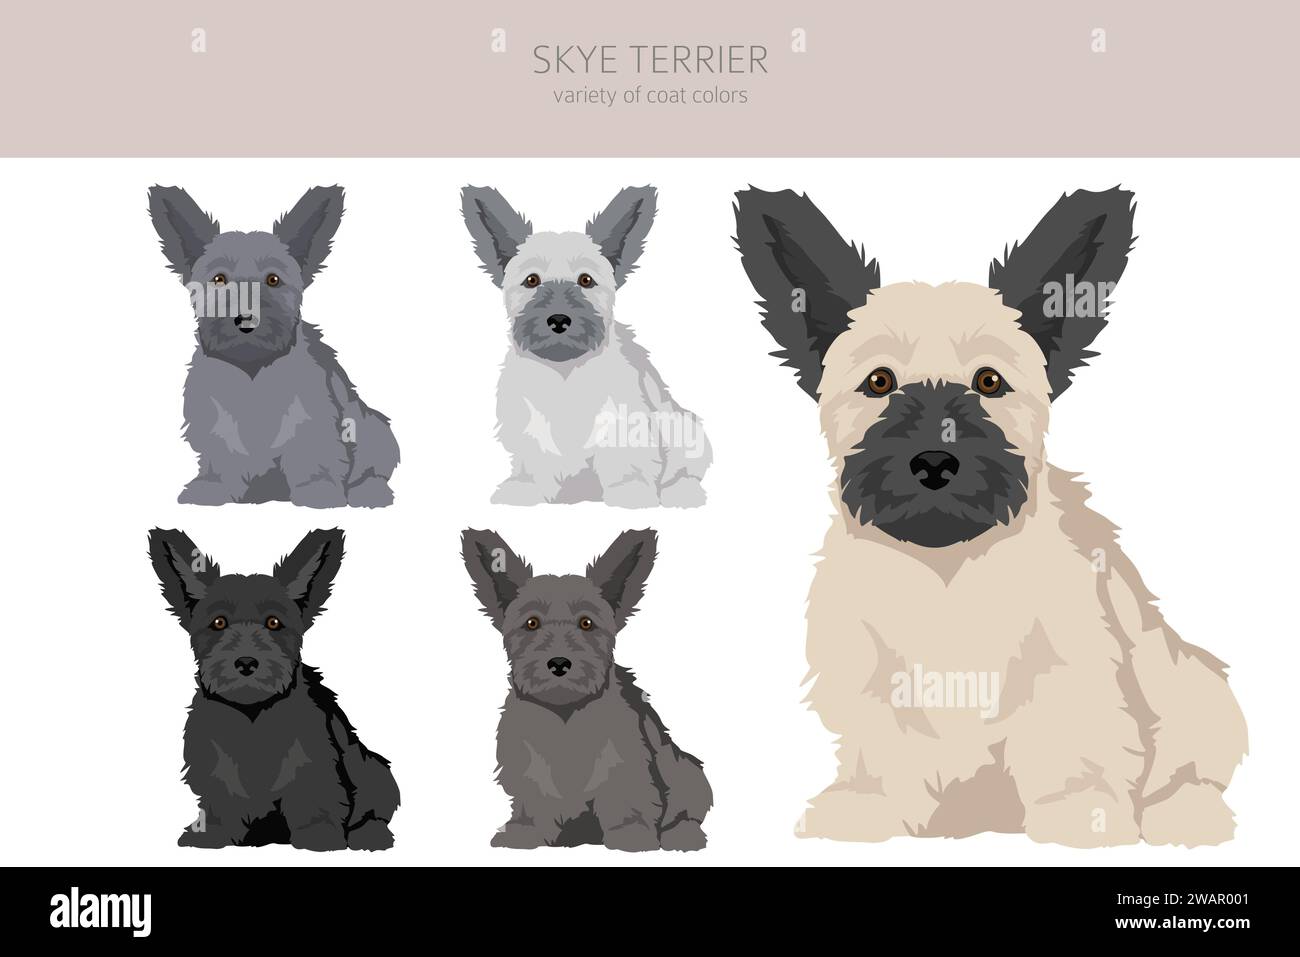 Skye terrier chiots couleurs de manteau, différentes poses clipart. Illustration vectorielle Illustration de Vecteur